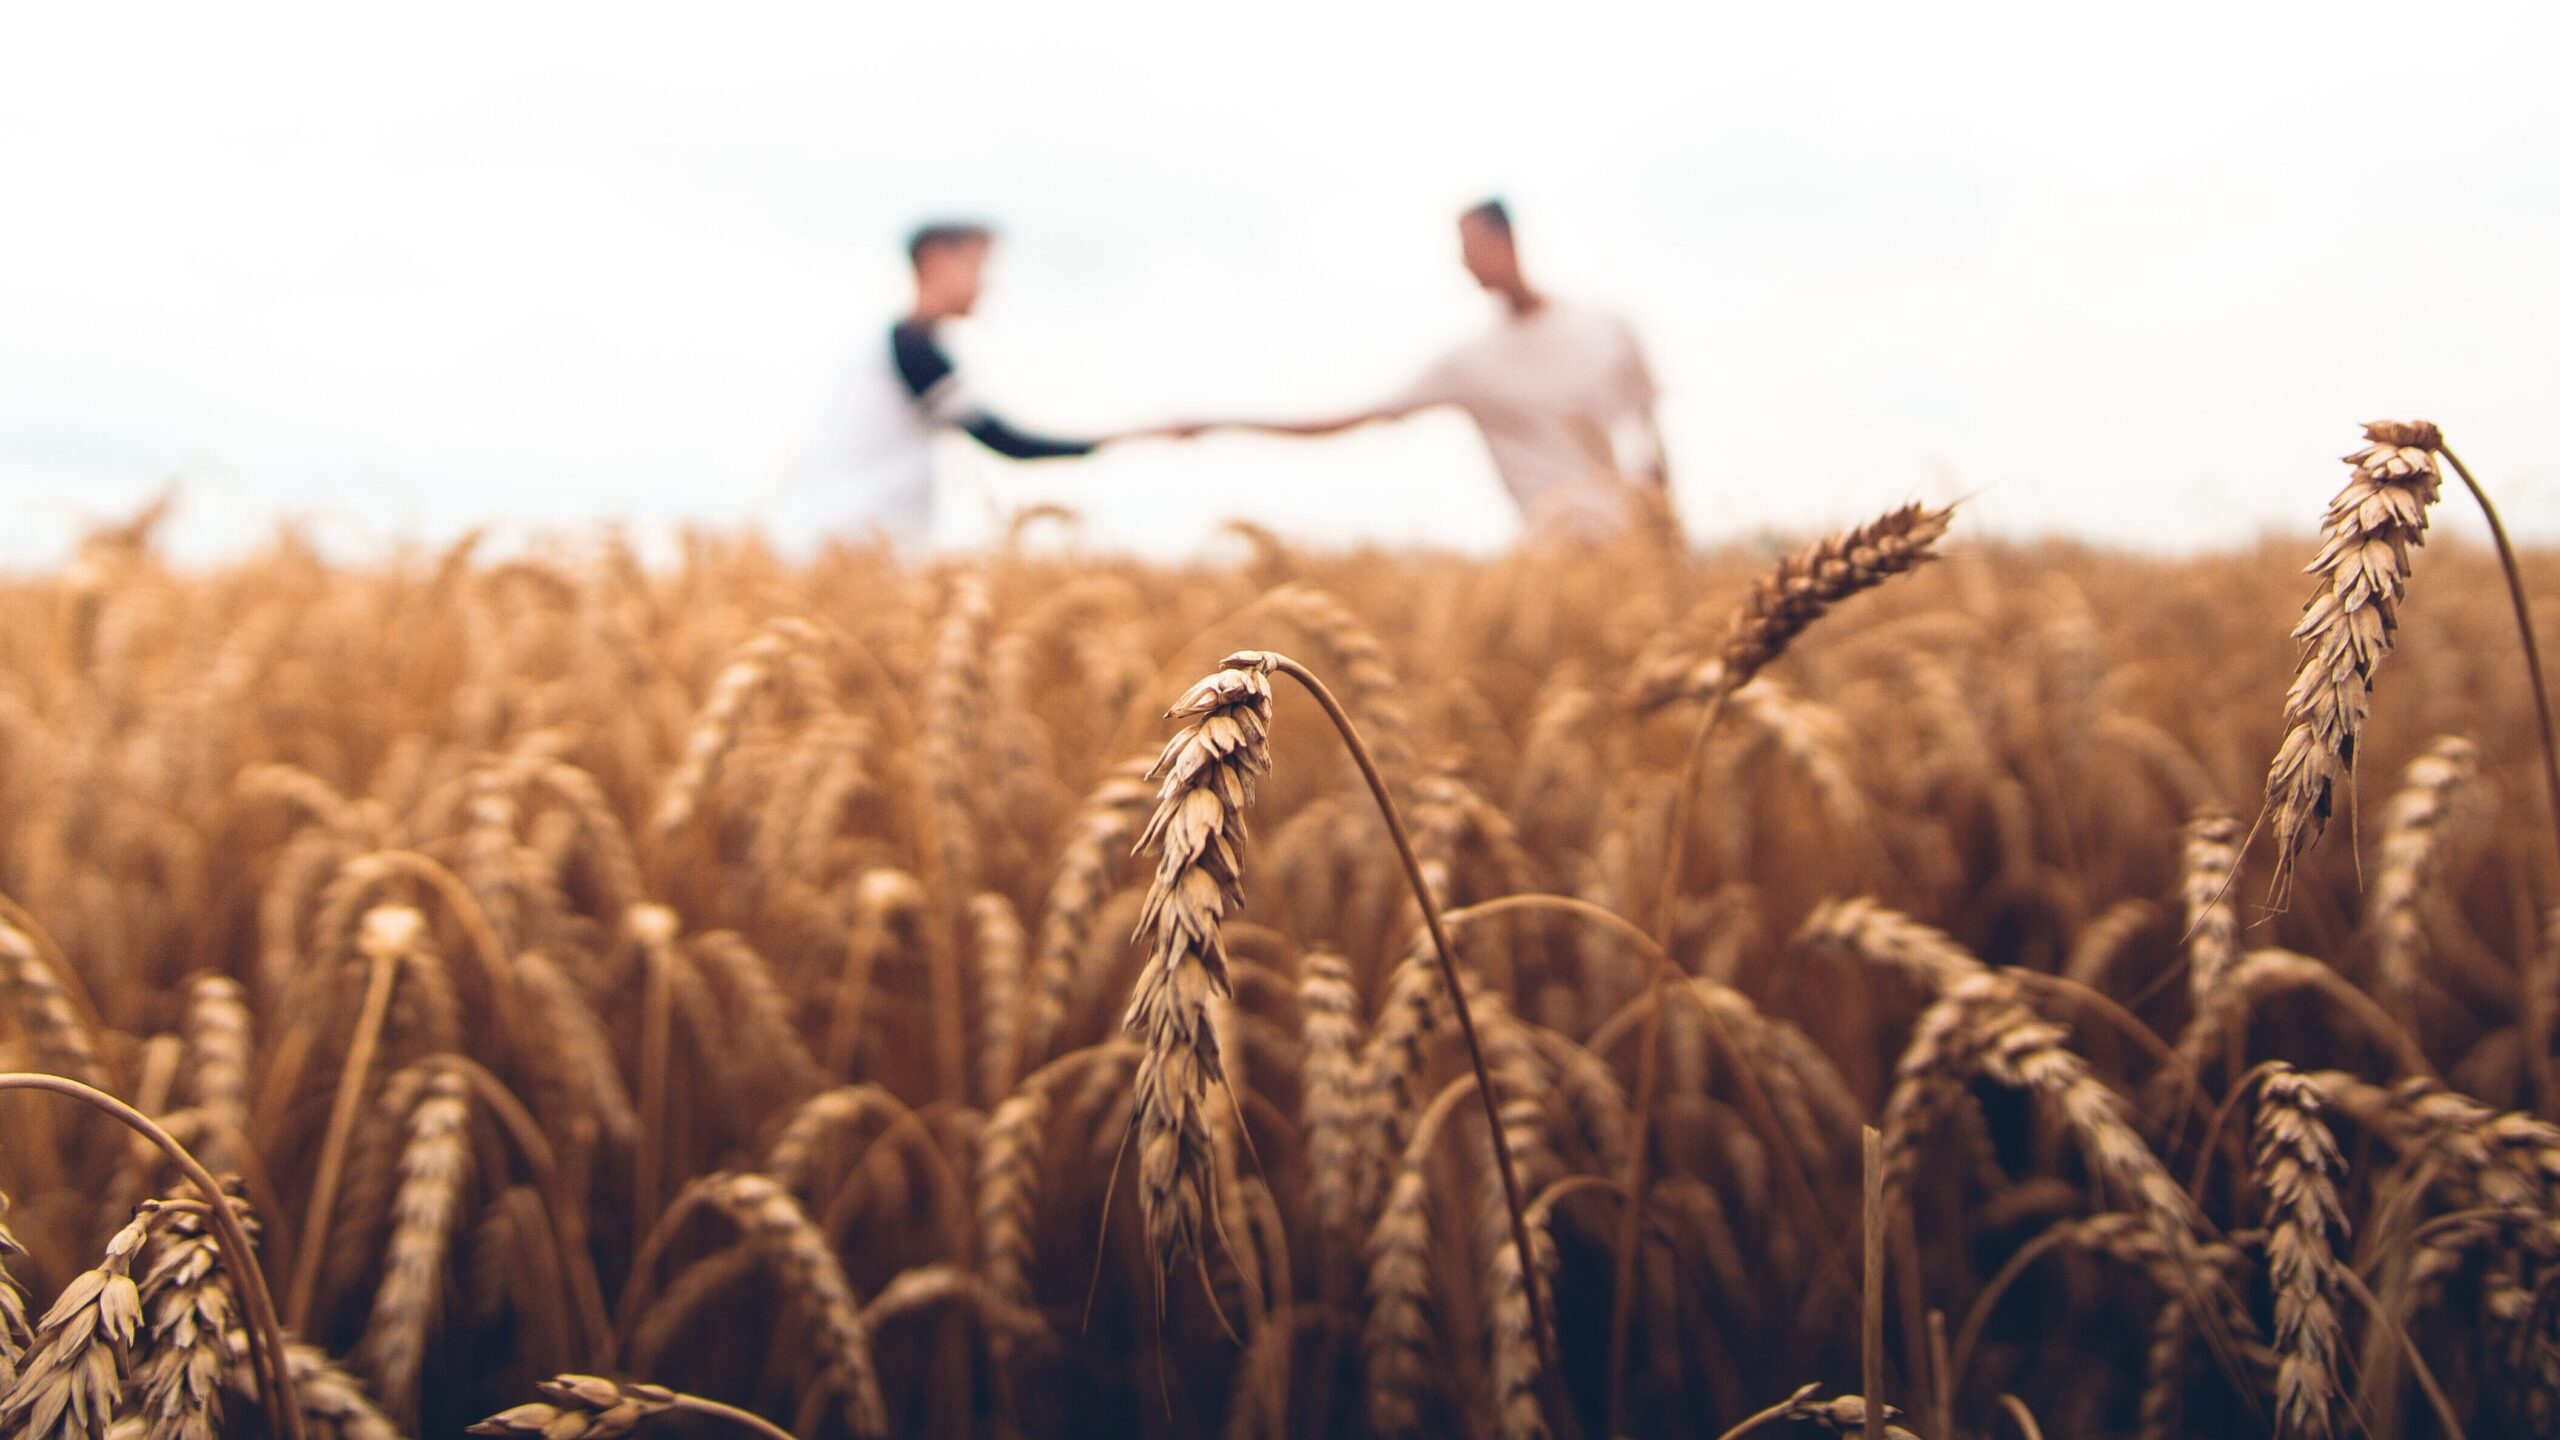 crops growinon the field men shaking hands